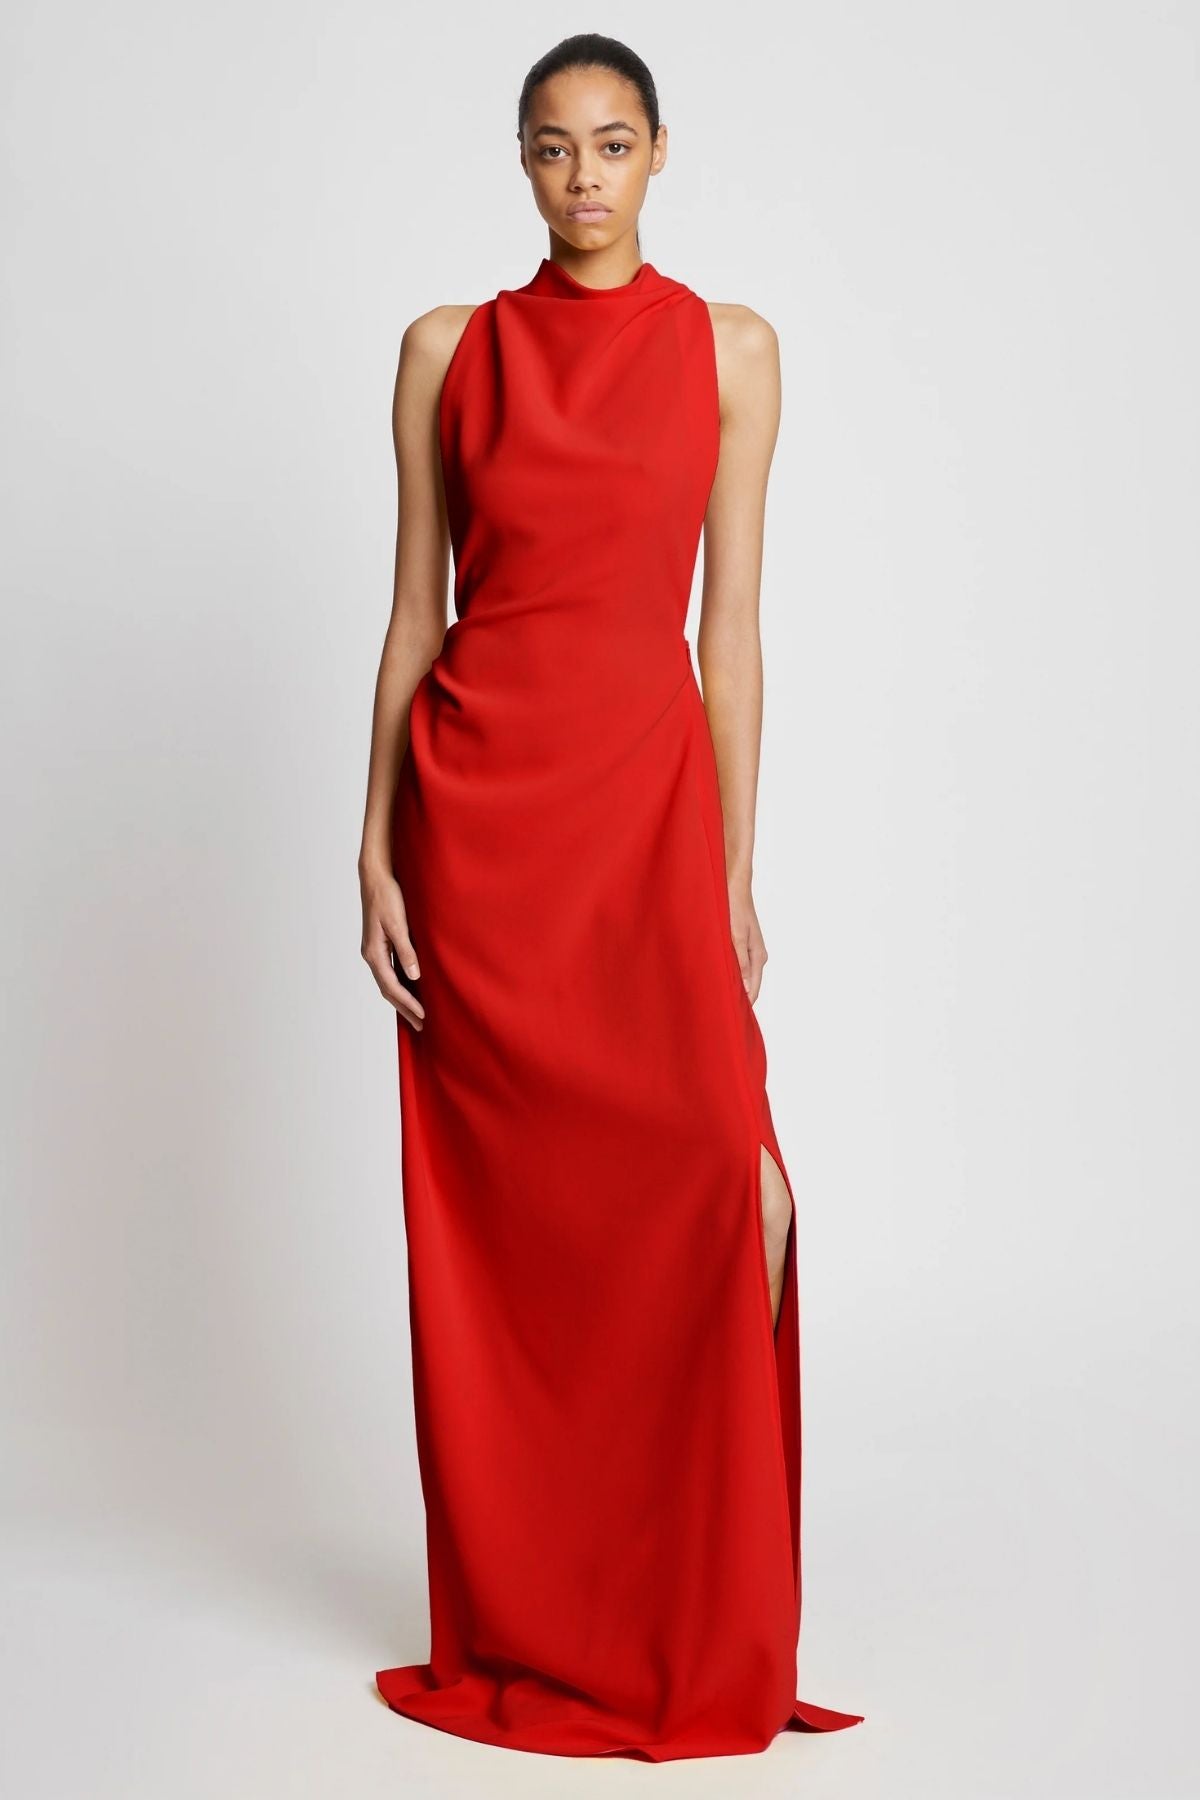 Proenza Schouler Faye Backless Twist Back Dress - Red